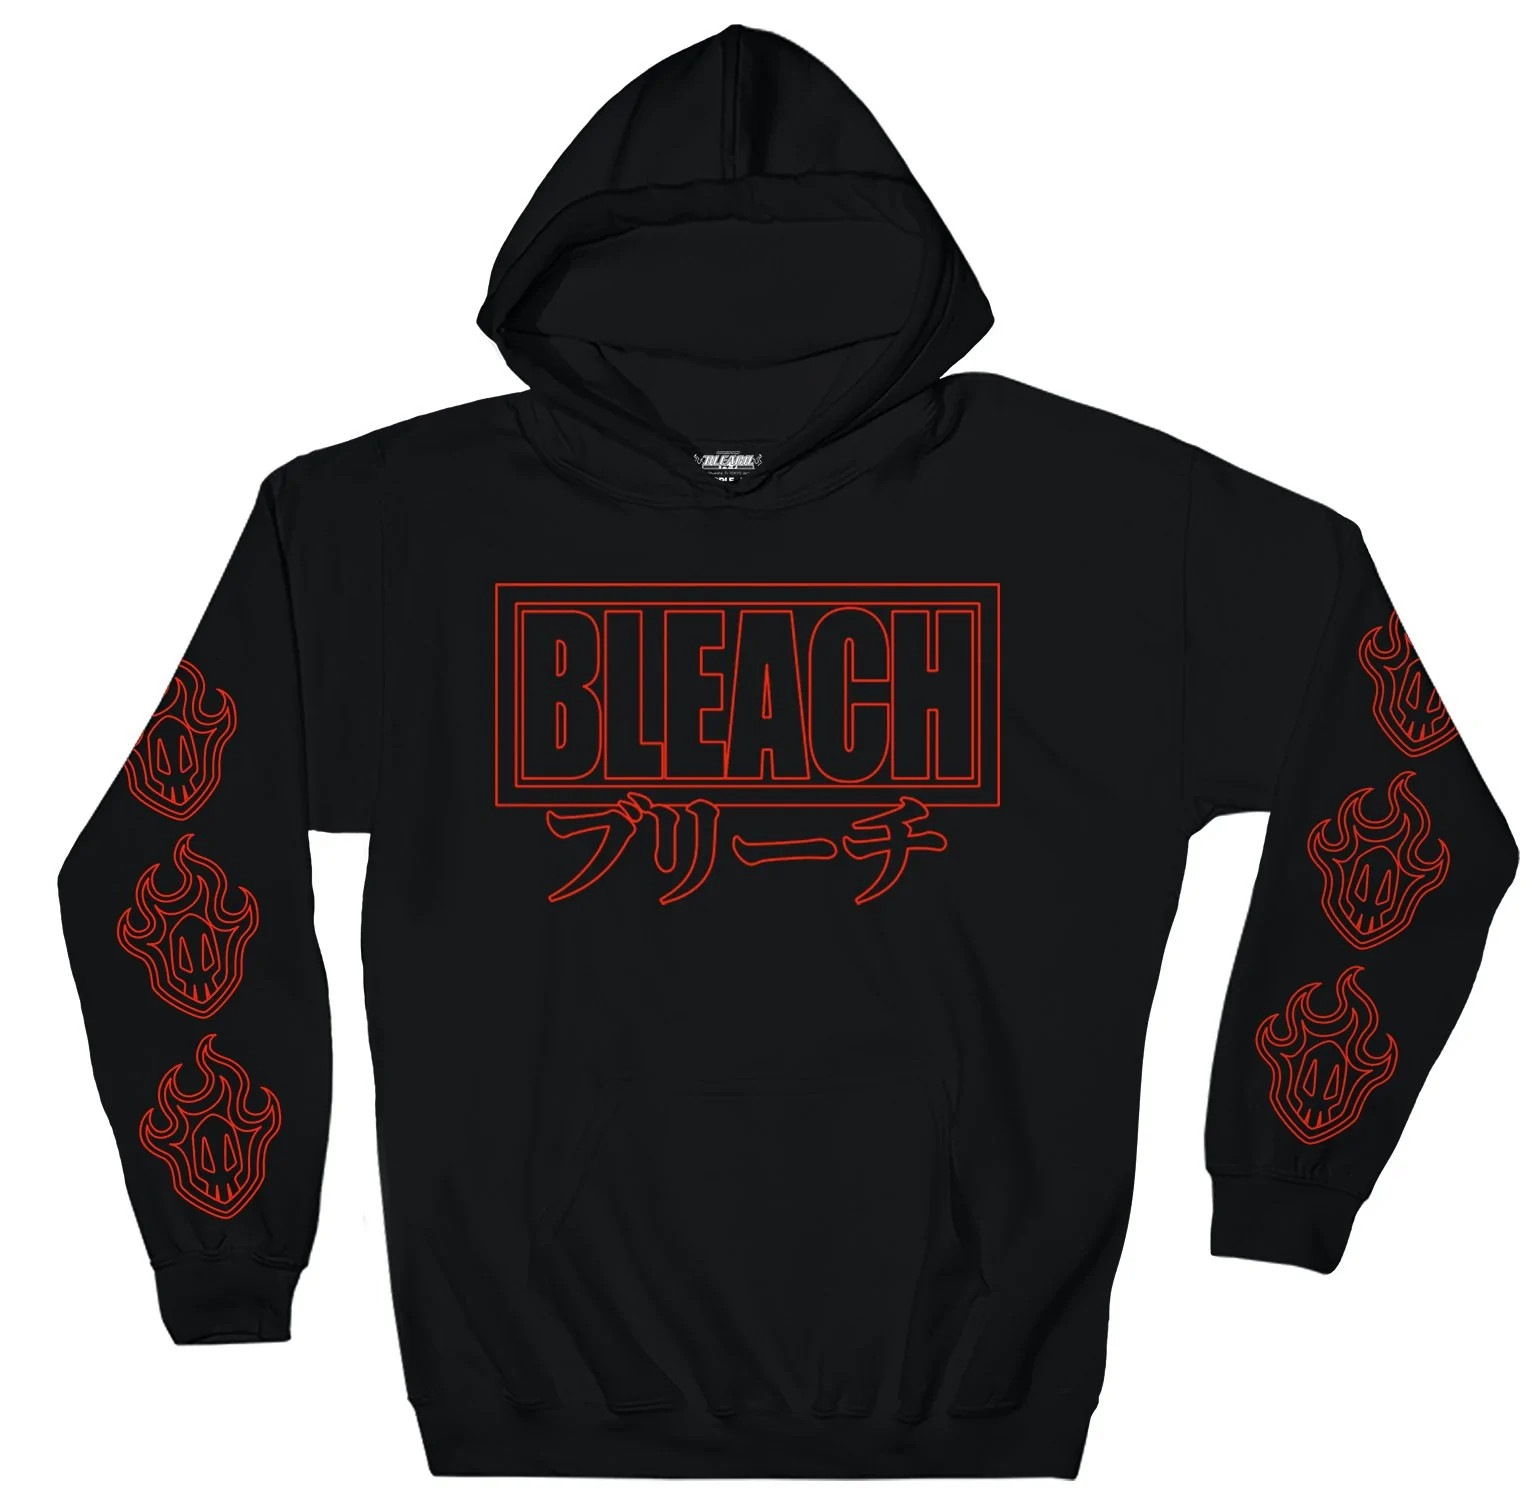 9 - Bleach Store